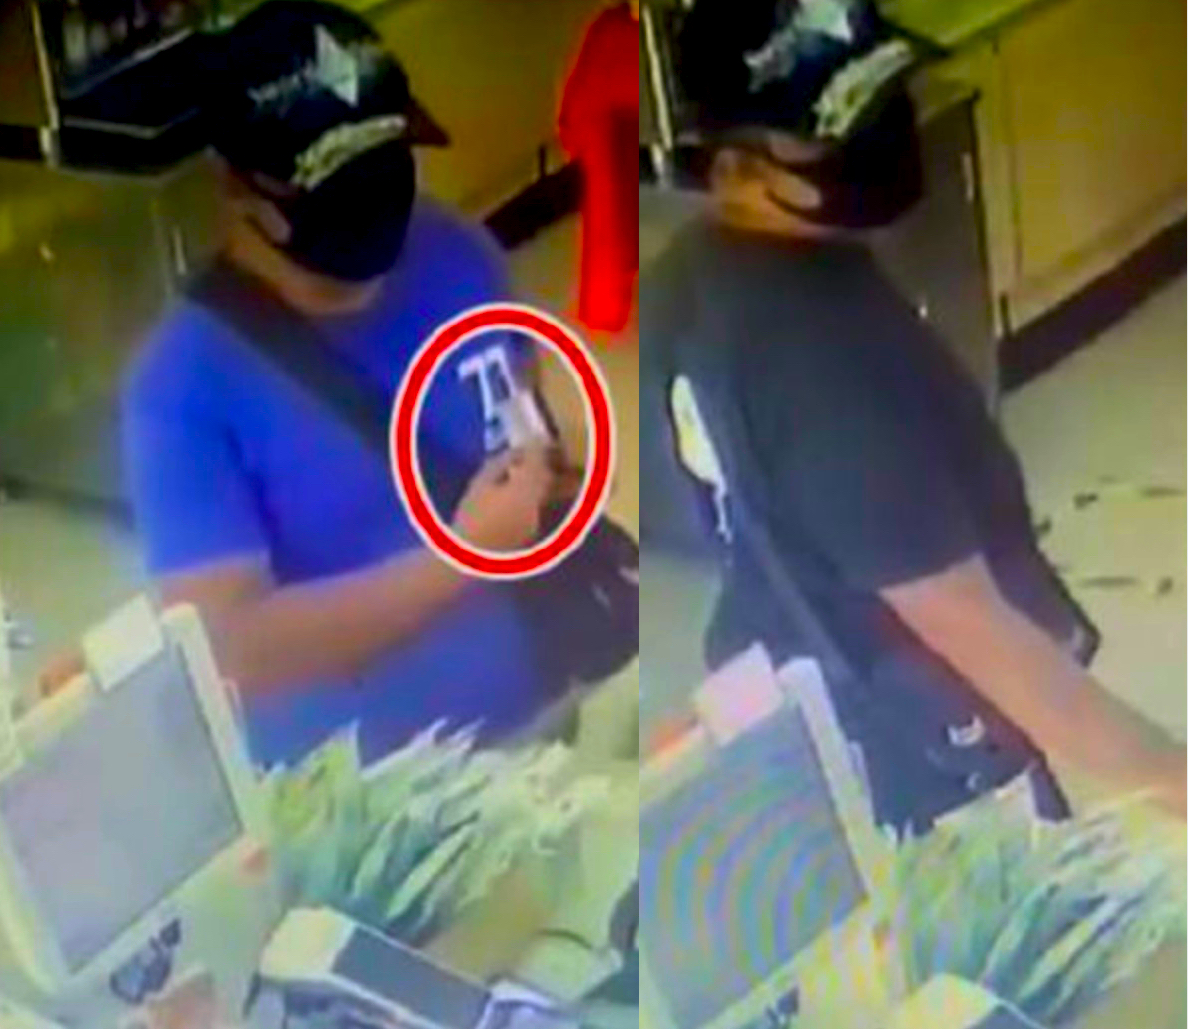 Cikgu Hilang Kad ATM Terkejut Duit Hilang RM1,000 Dalam Akaun, Rupanya Pencuri Guna Beli Rokok Beratus Ringgit